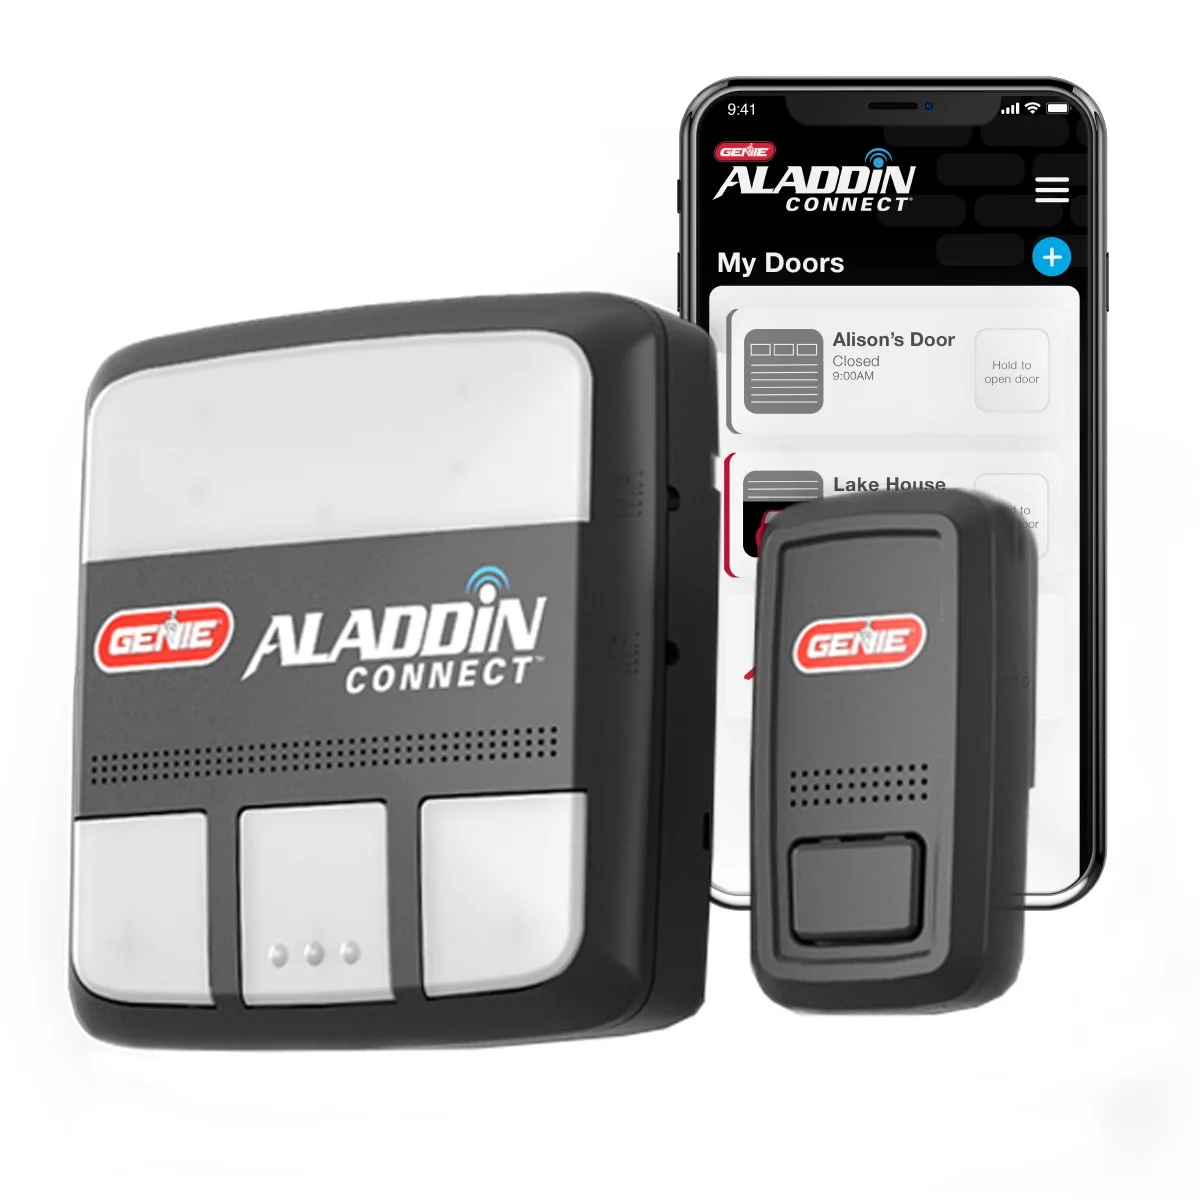 Aladdin Connect® Smartphone Enabled Garage Door Controller (Retrofit-Kit) - Universal works with most major brand garage door openers